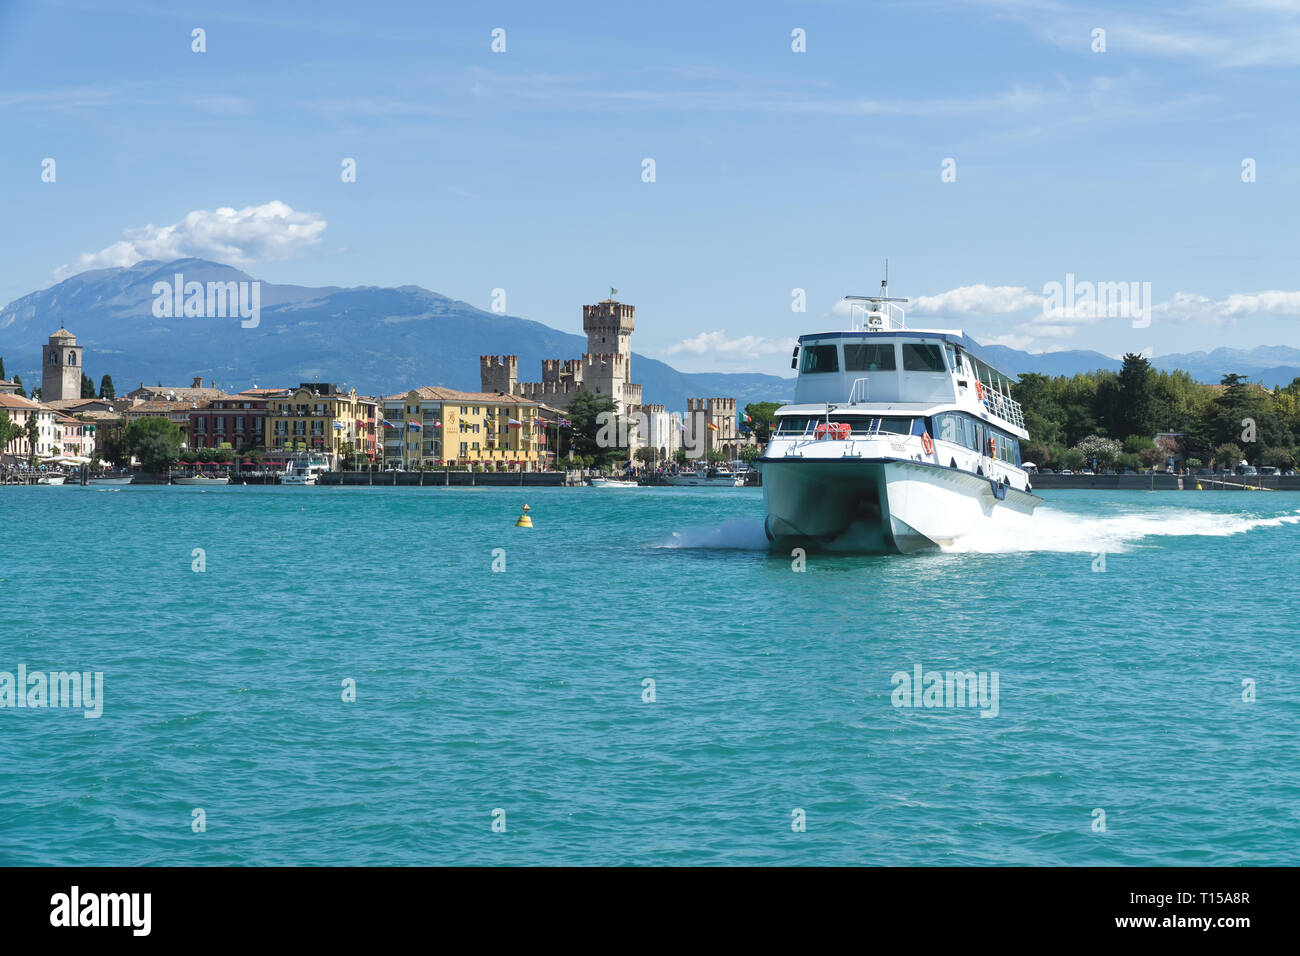 Sirmione, Italien - 07 August 2017: Touristische Schiff am Gardasee. Panorama von Sirmione, Caligero Schloss und die Berge im Hintergrund. Stockfoto